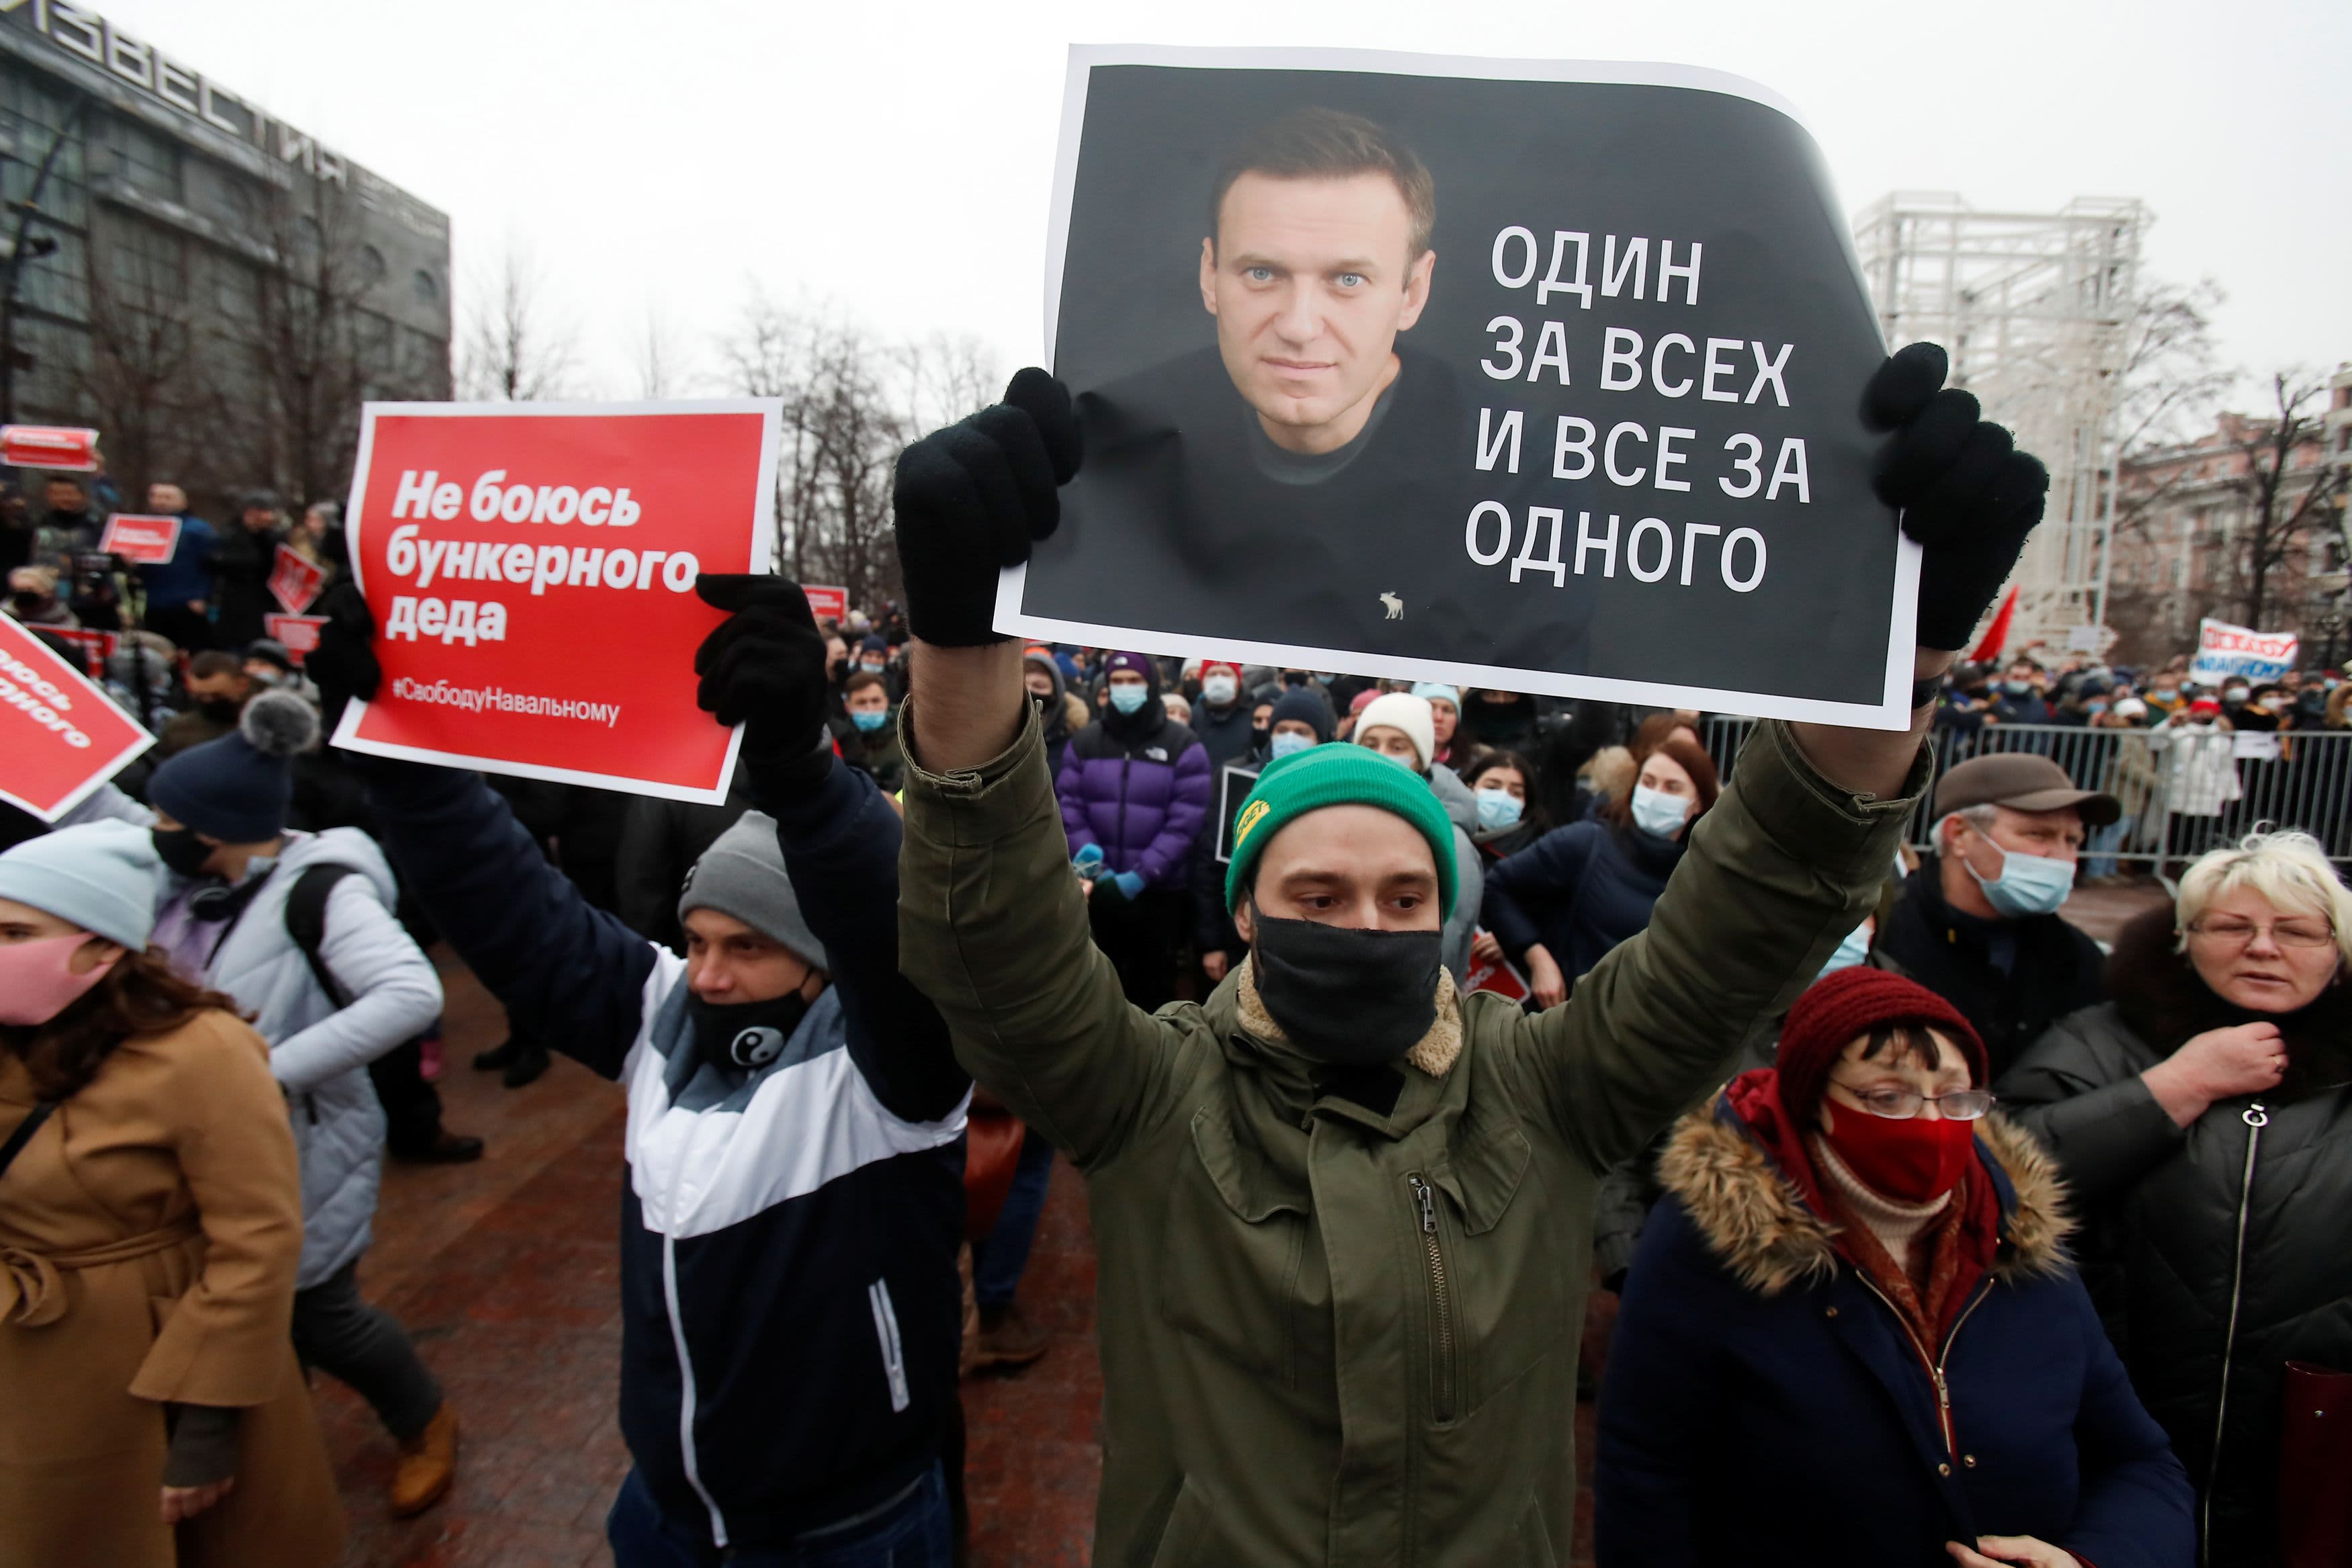 Secretary of State Blinken targets Russia’s treatment of opposition leader Navalny